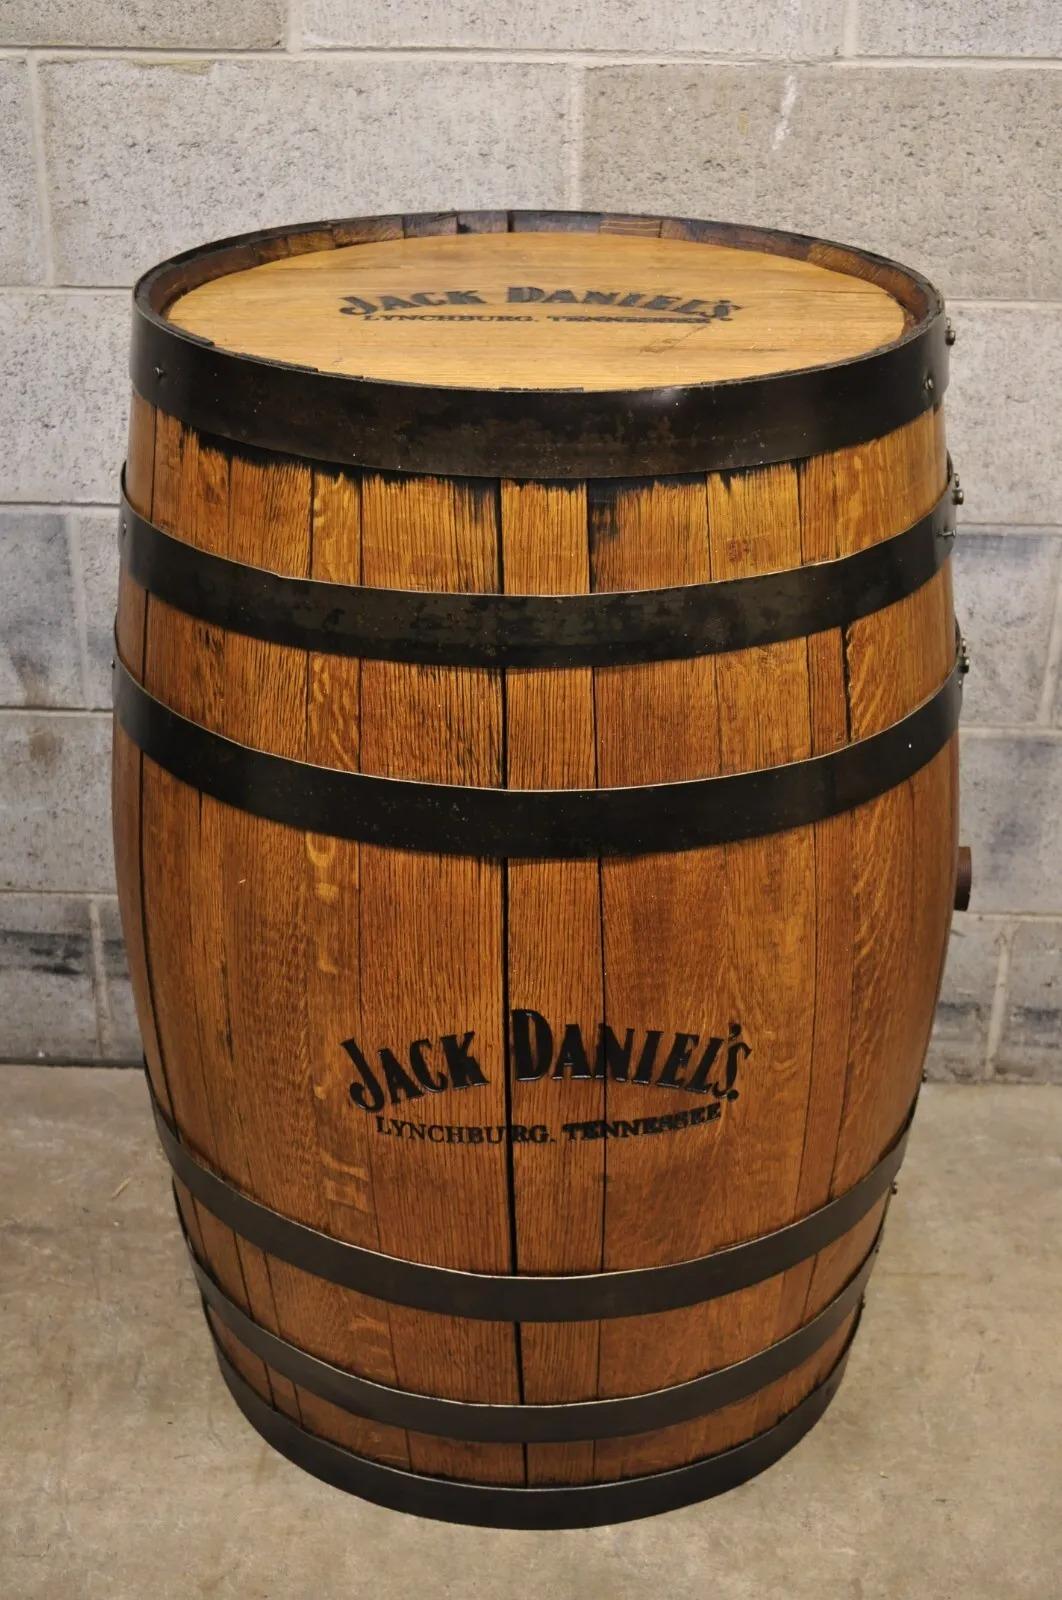 Jack Daniels Whiskey Barrel Engraved Oak Wood Metal Bands For Sale 5